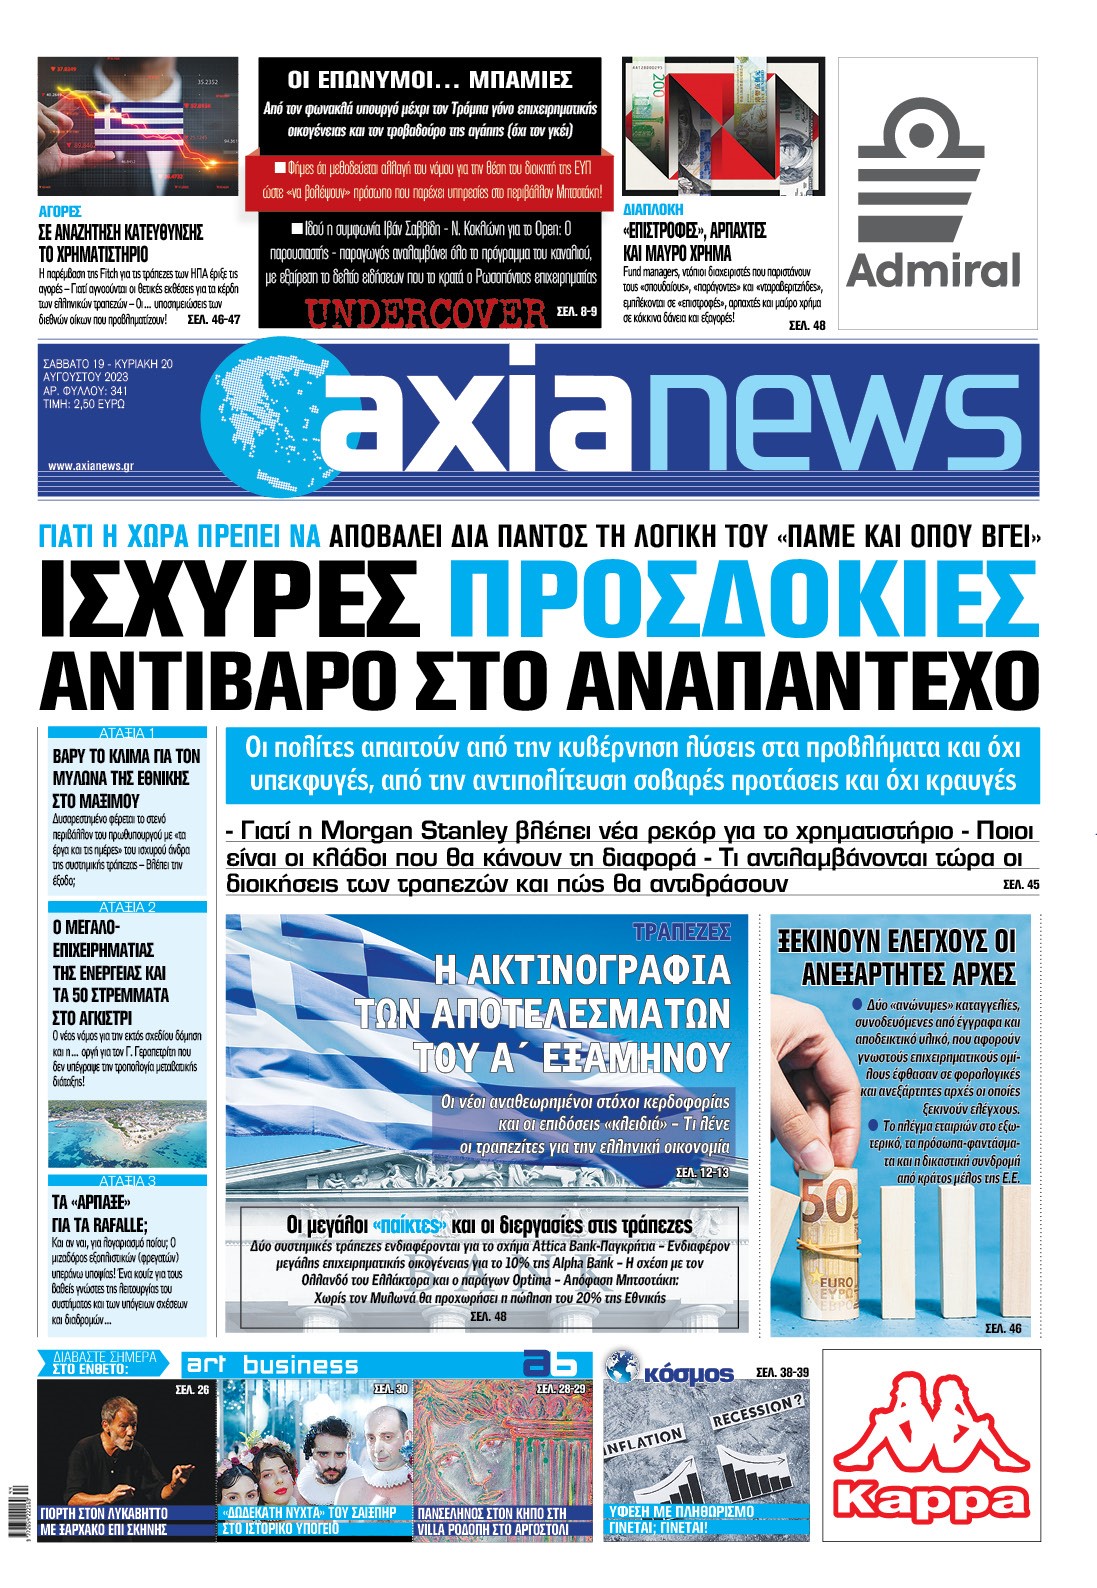 Στην «Axianews»: «Ισχυρές προσδοκίες αντίβαρο στο αναπάντεχο» 